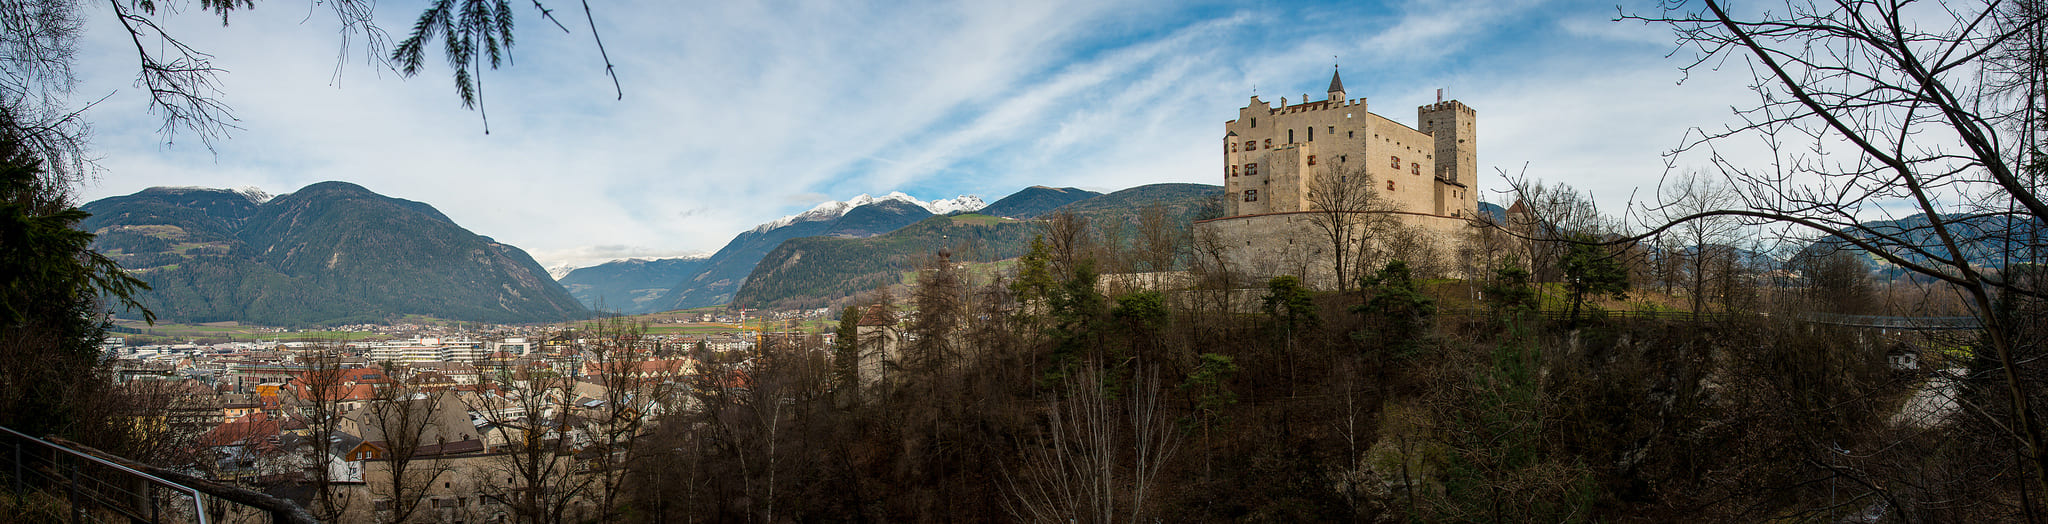 castello di Brunico